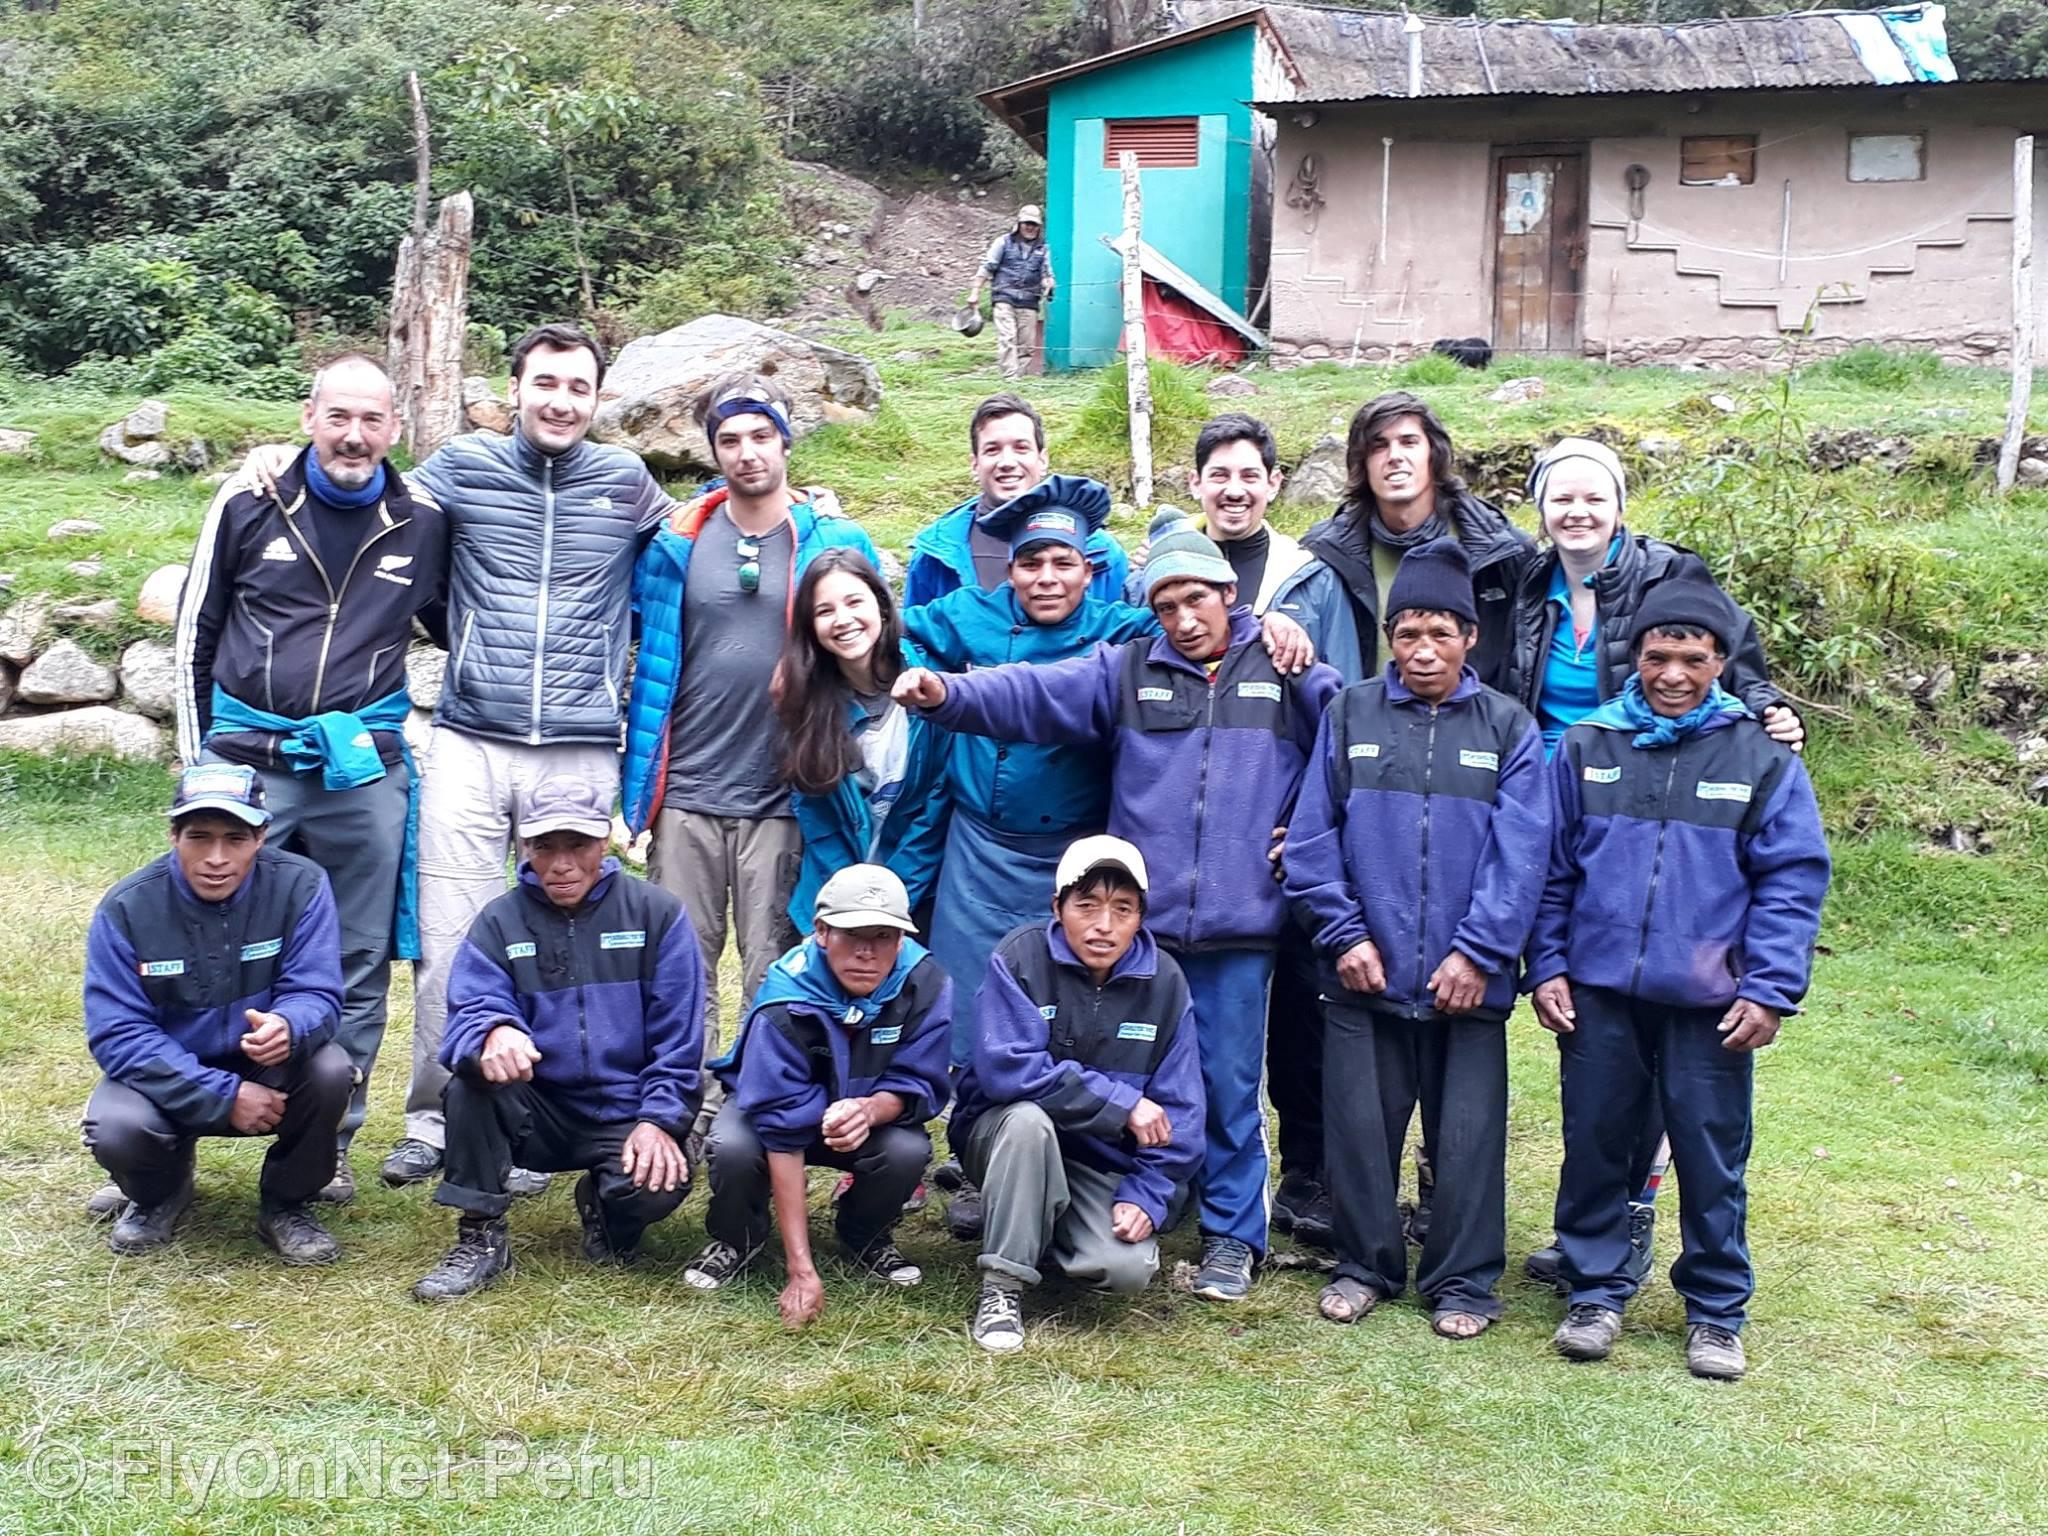 Álbum de fotos: Our group of trekkers, Inca Trail